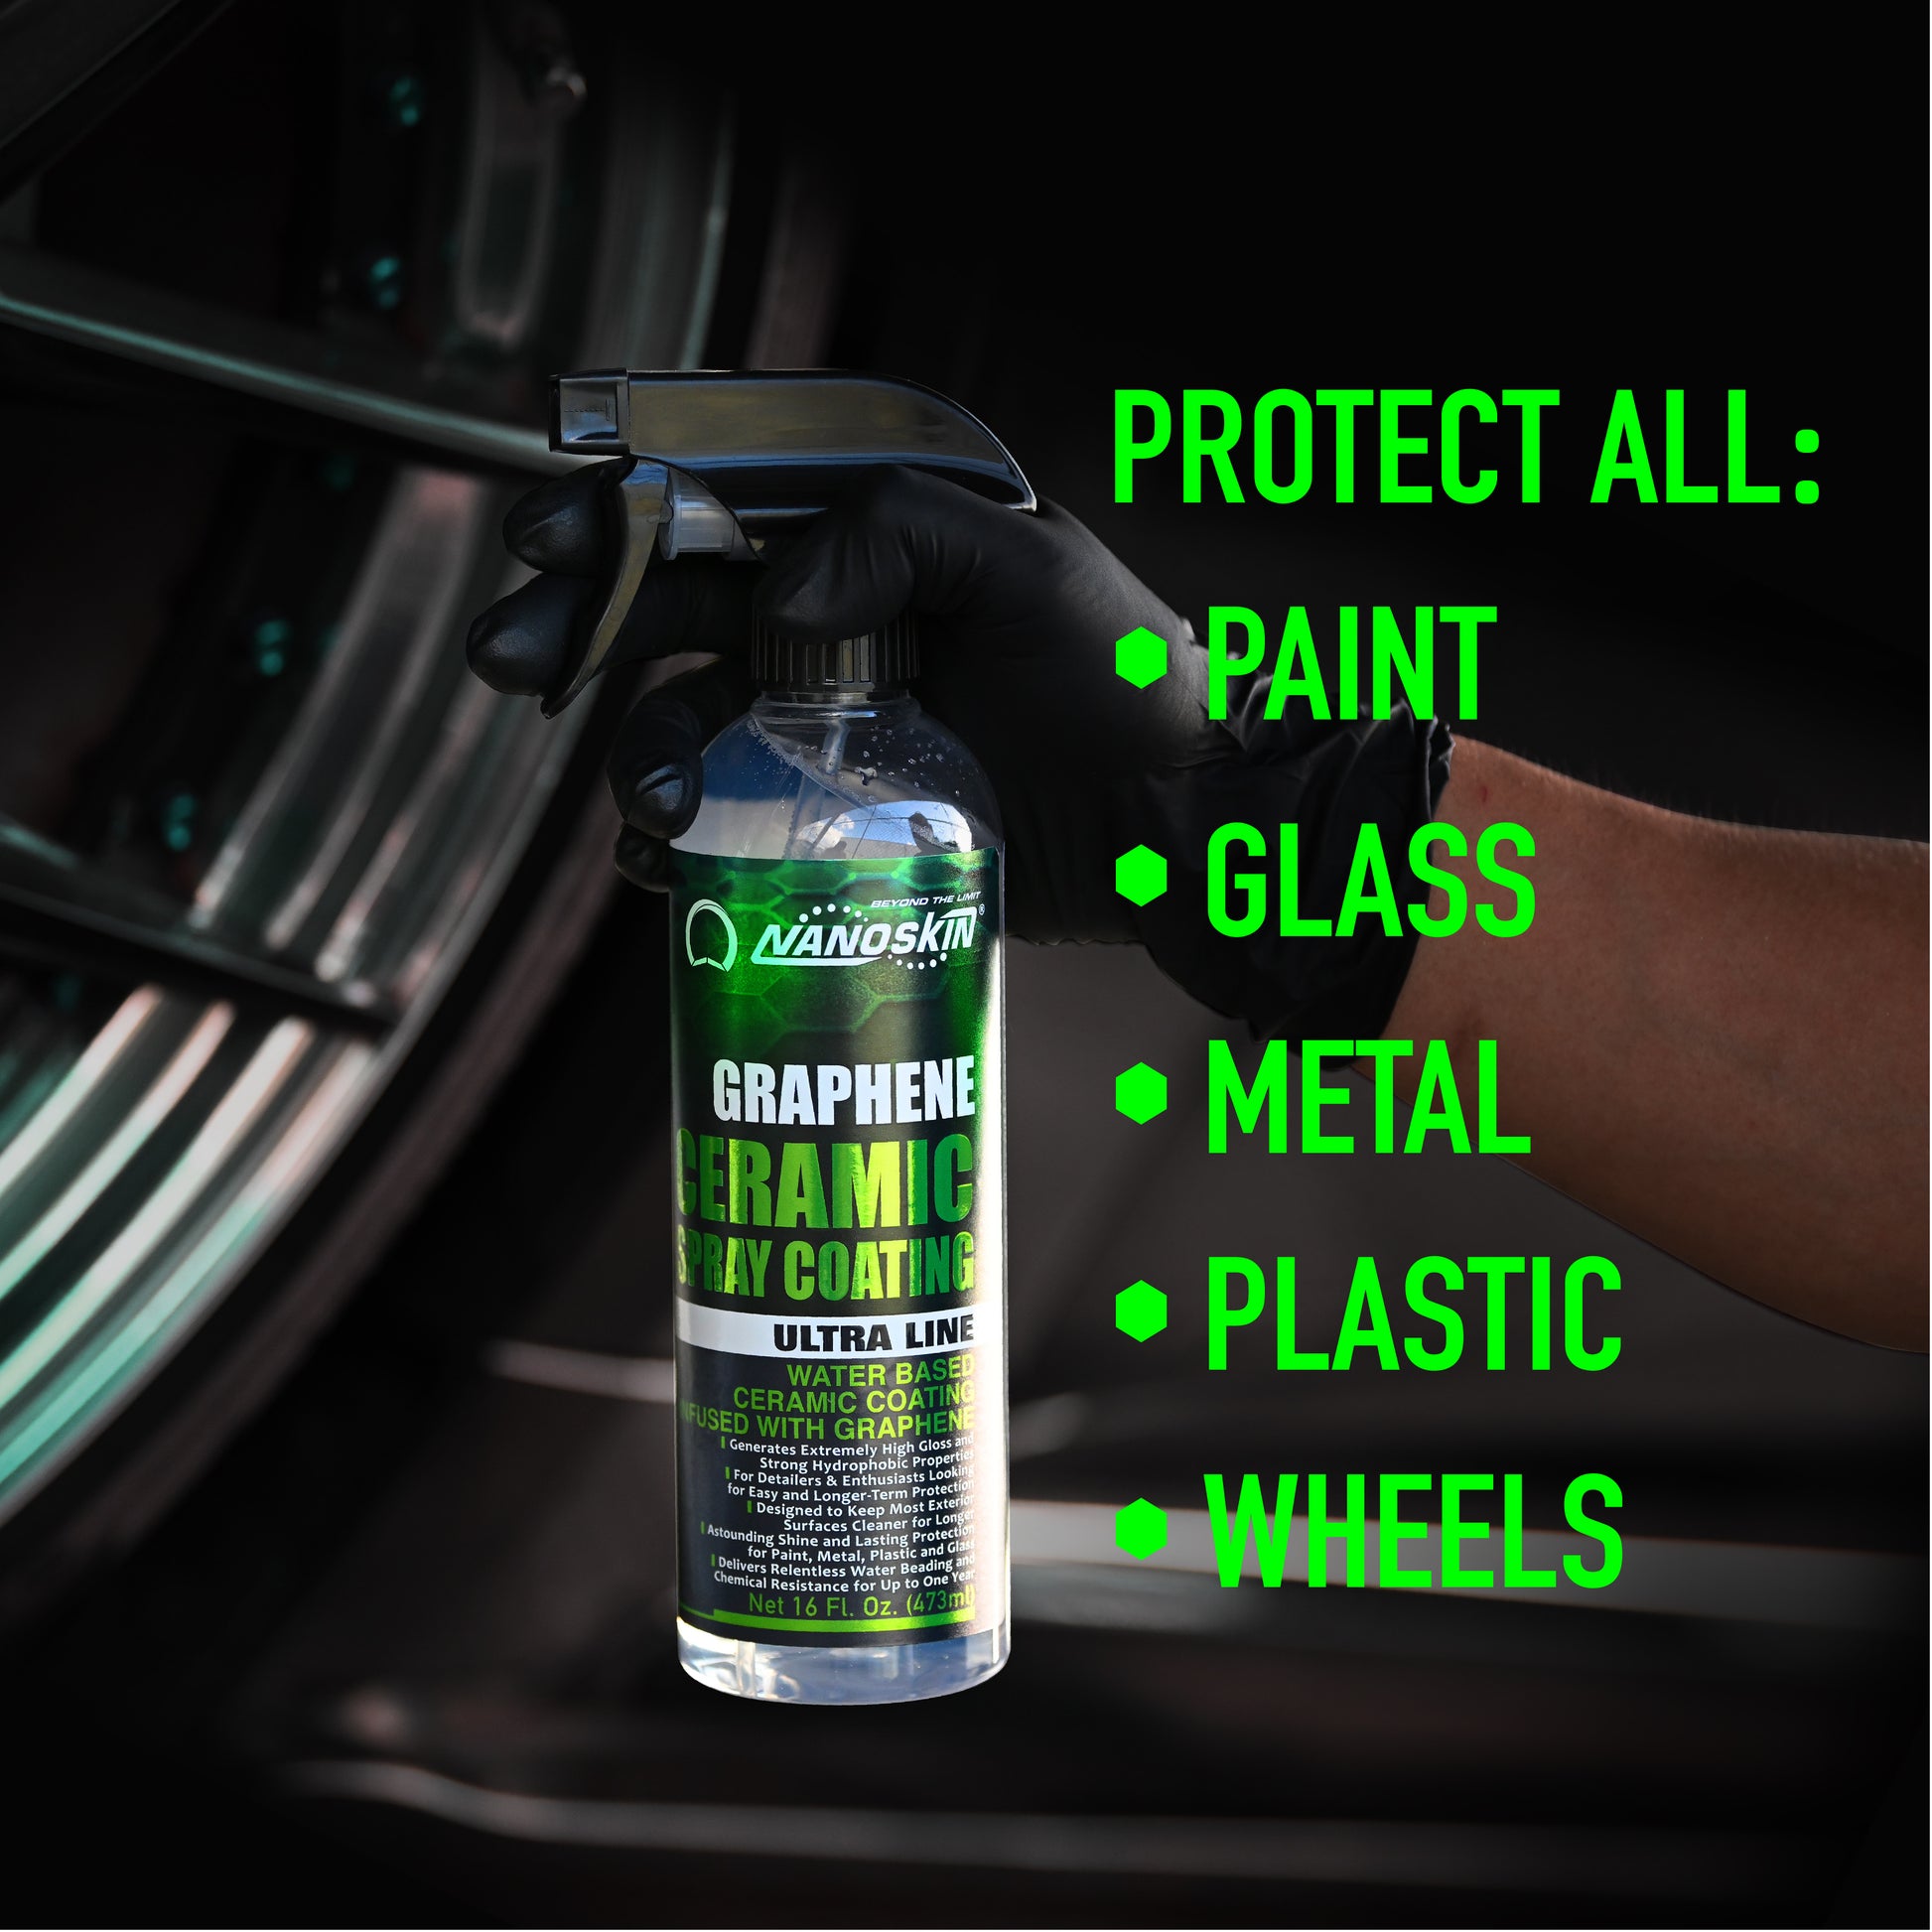 Ceramic Car Coating Spray, 3 In 1 Ceramic Car Coating Spray, 3 In 1 High  Protection Quick Car Coating Spray, Ceramic Car Polish and Protect Coating